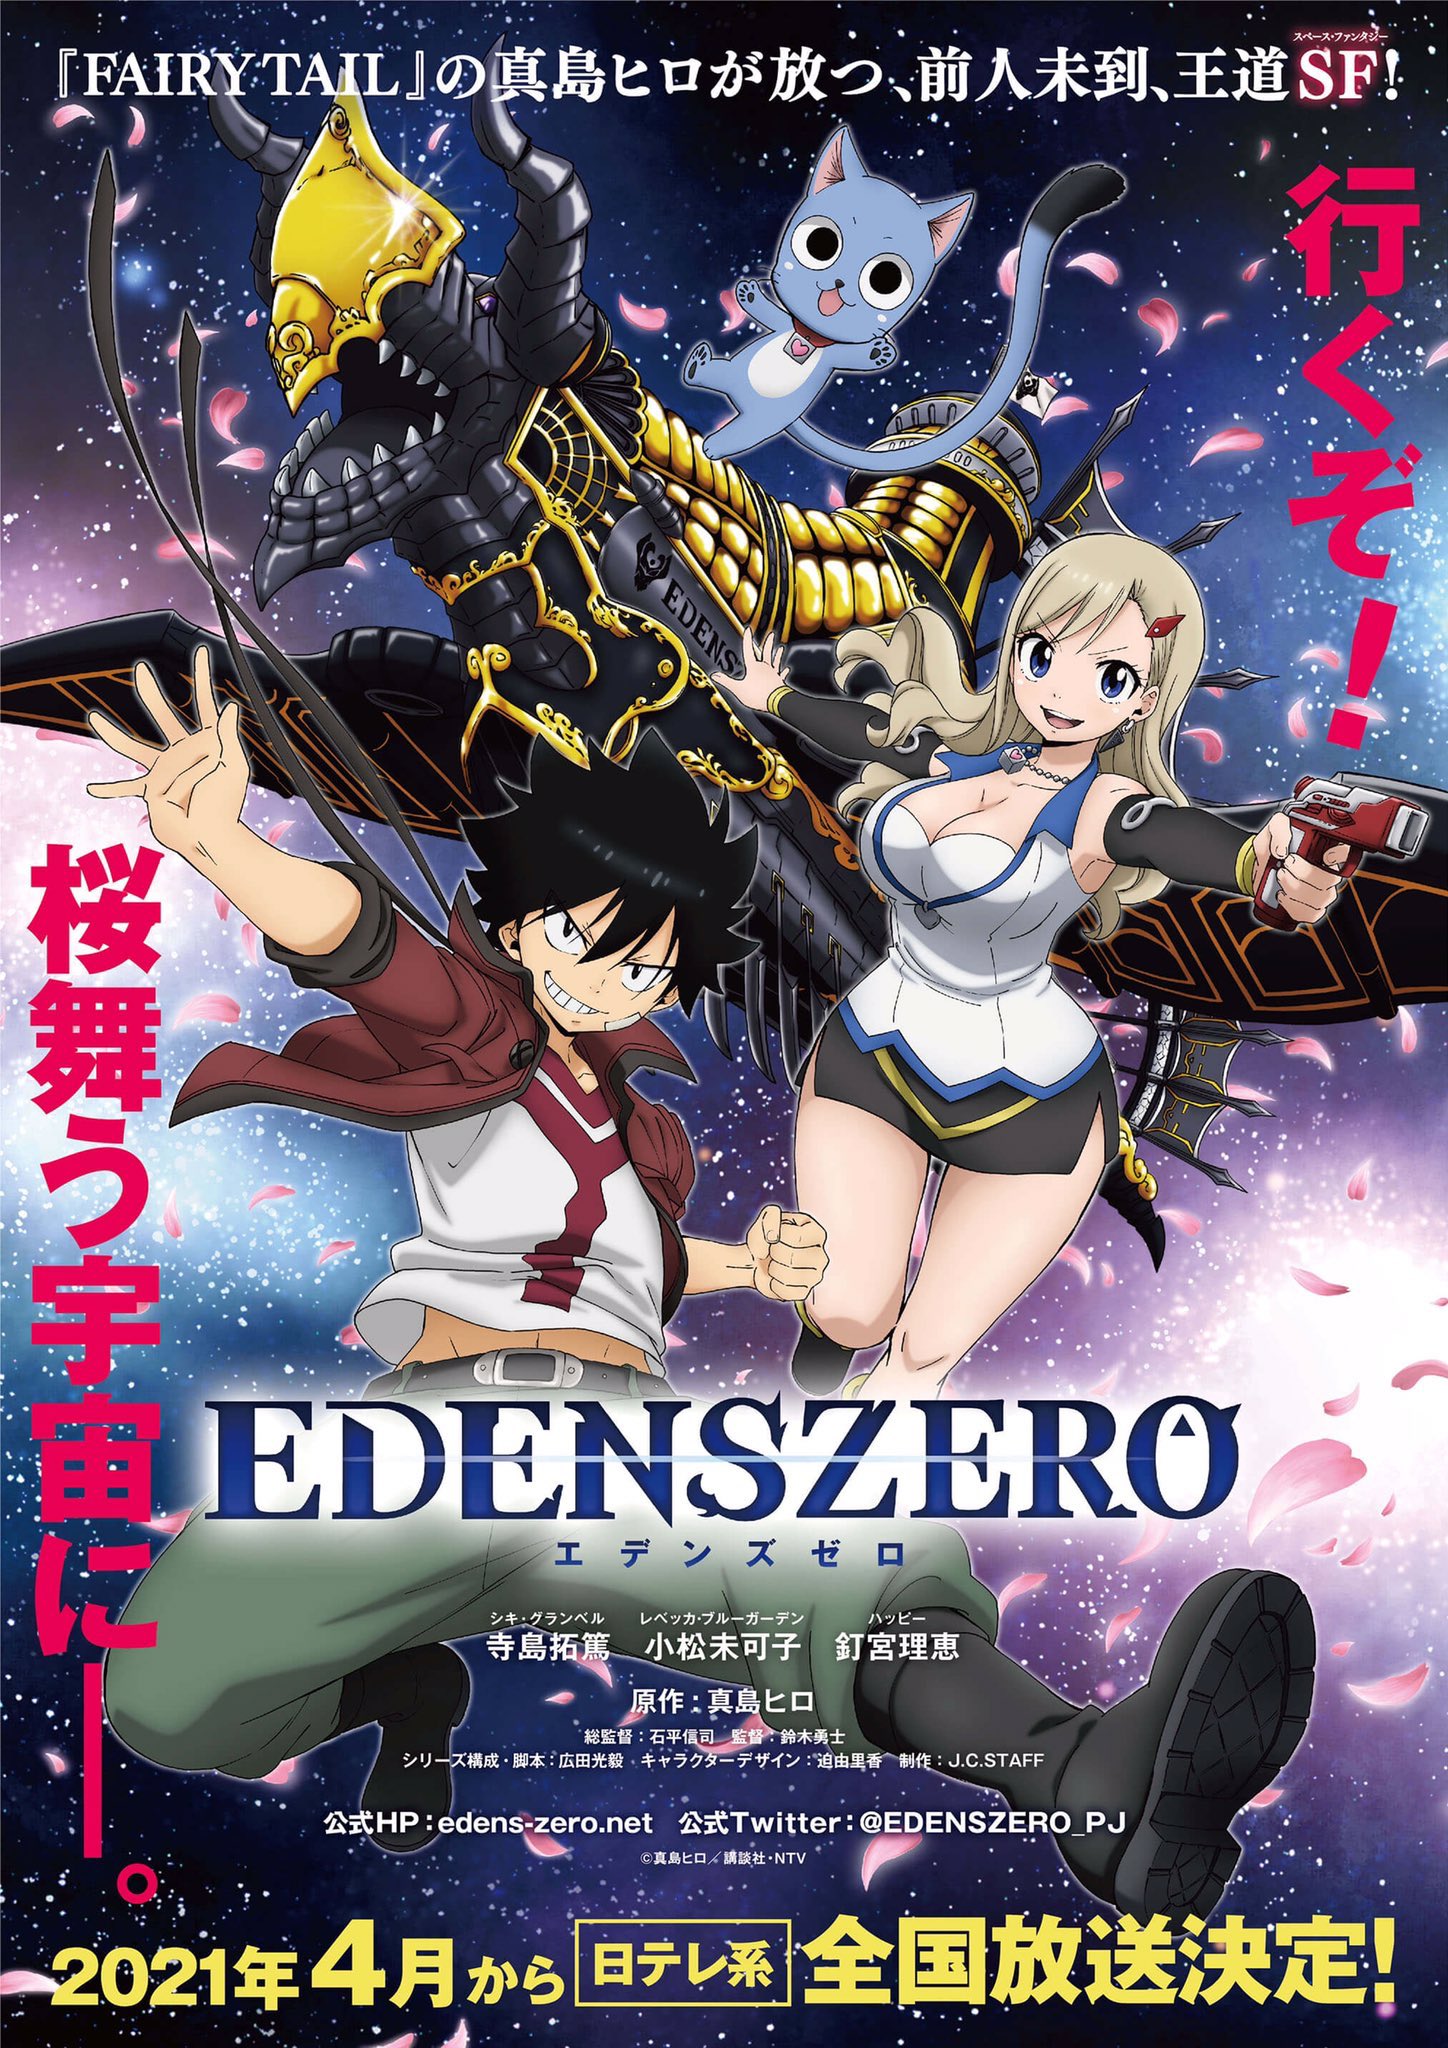 Pôster promocional de Edens Zero, em japonês.